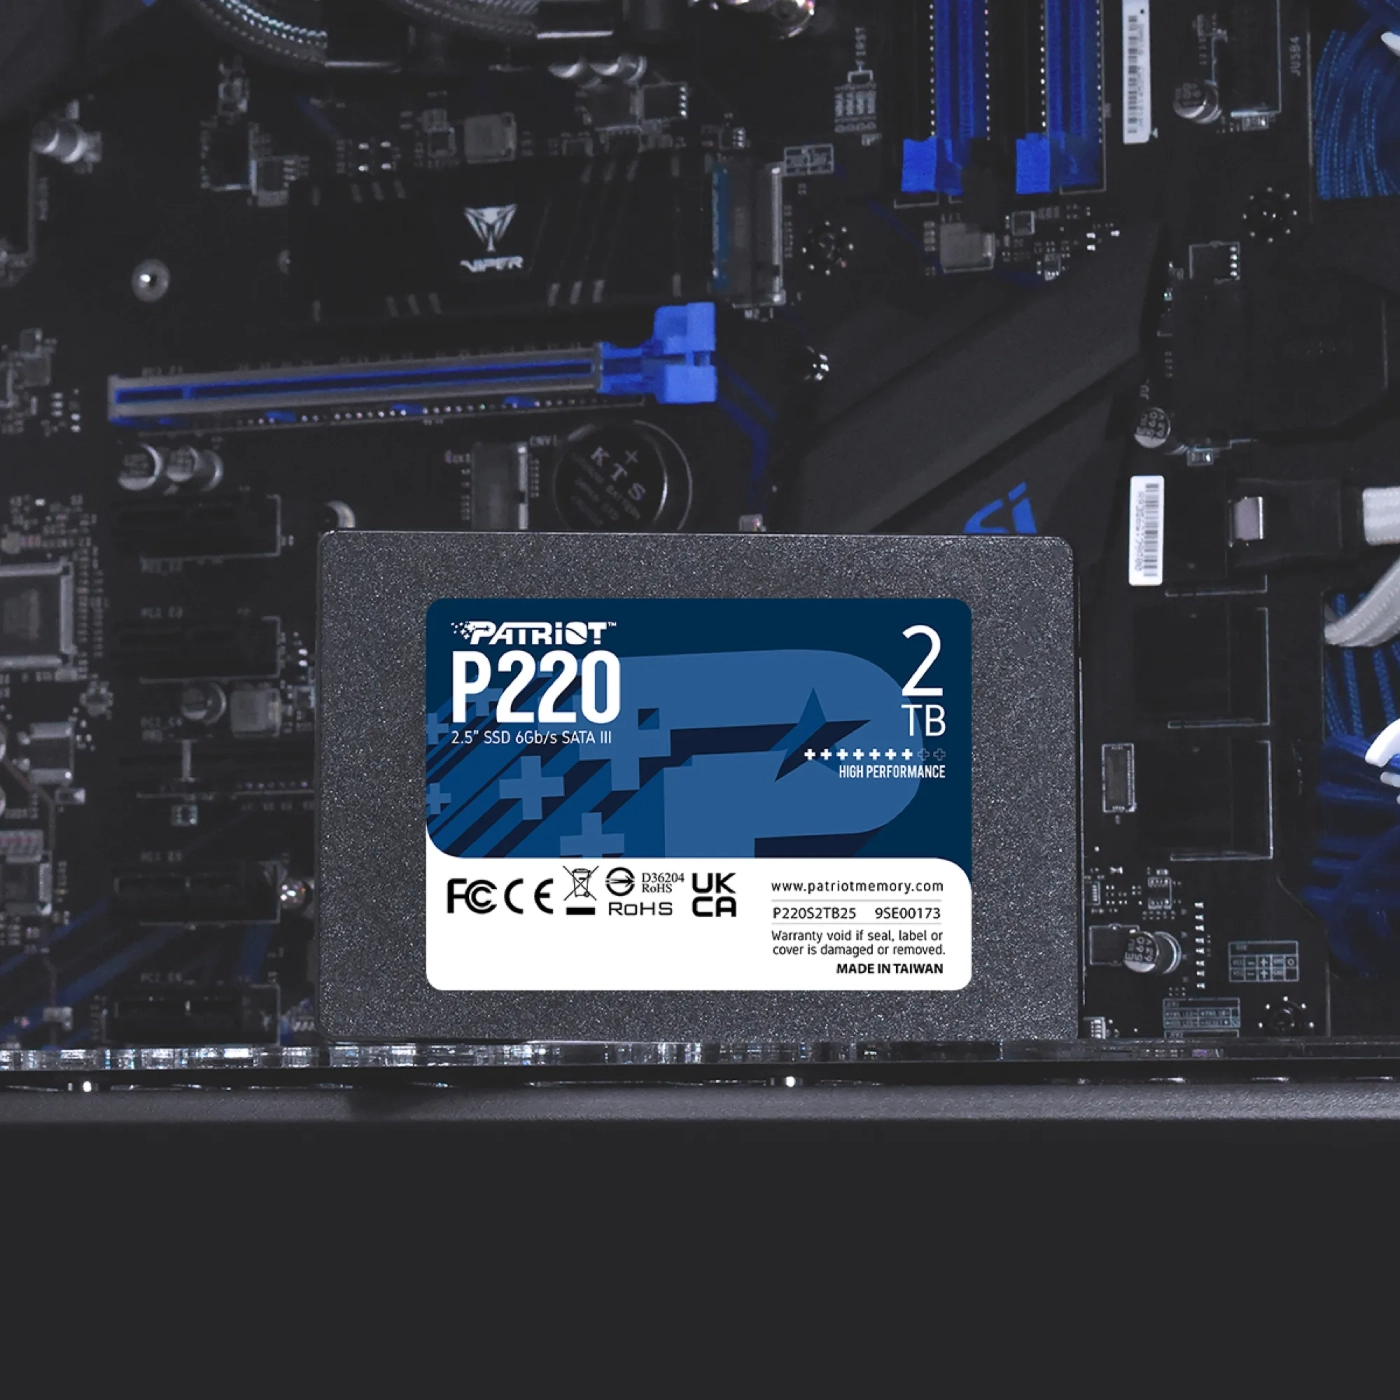 Купить SSD диск Patriot P220 2TB 2.5" (P220S2TB25) - фото 5